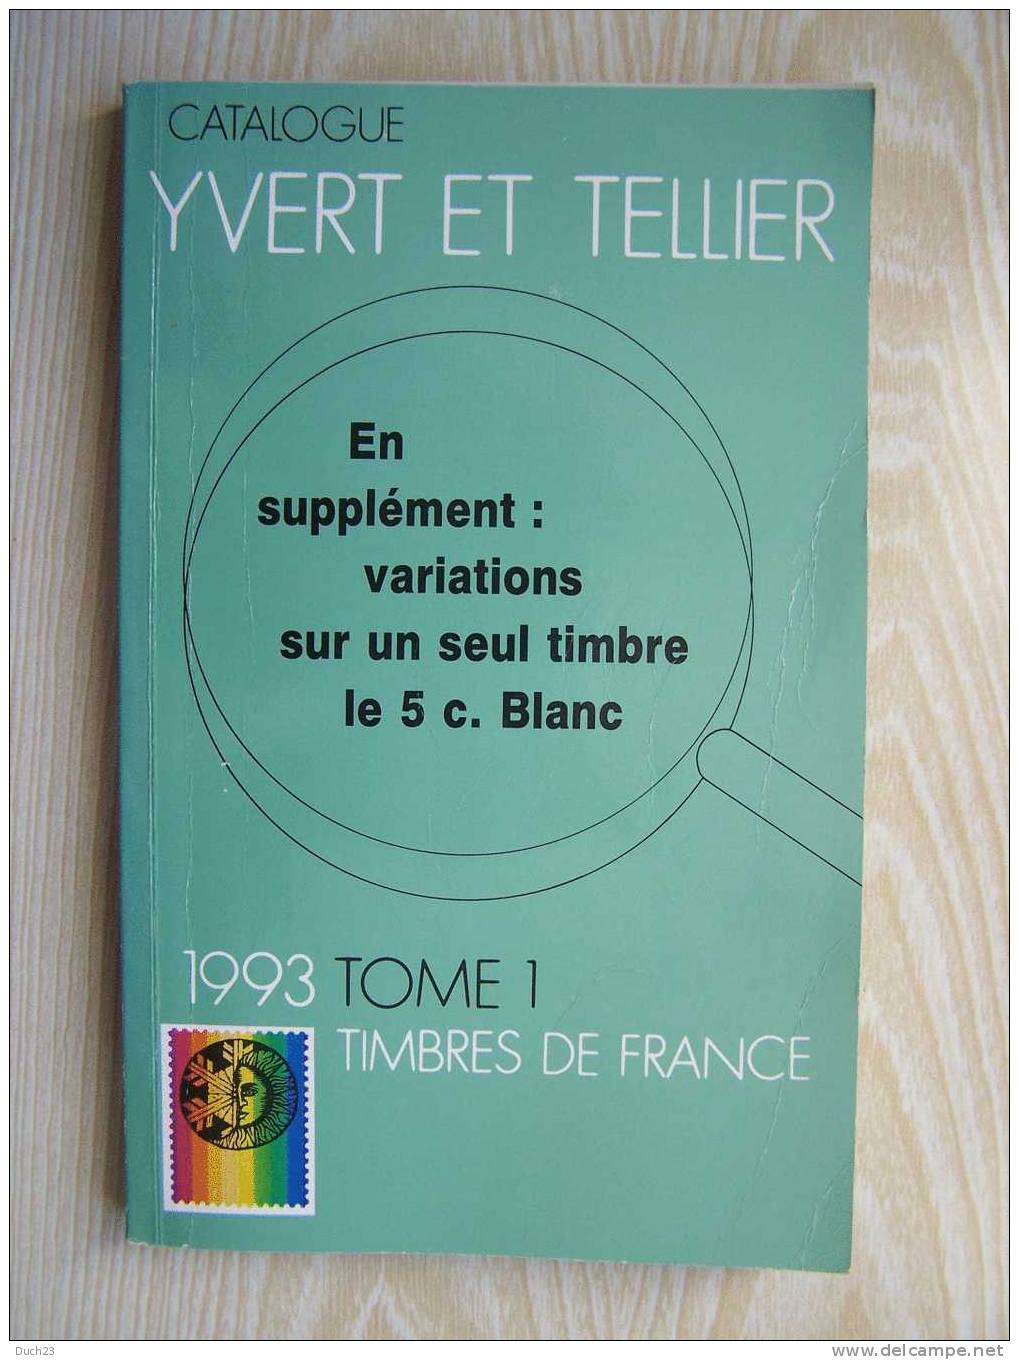 CATALOGUE DE COTATION YVERT ET TELLIER ANNEE 1993 TOME 1   BON ETAT   REF CD - Francia